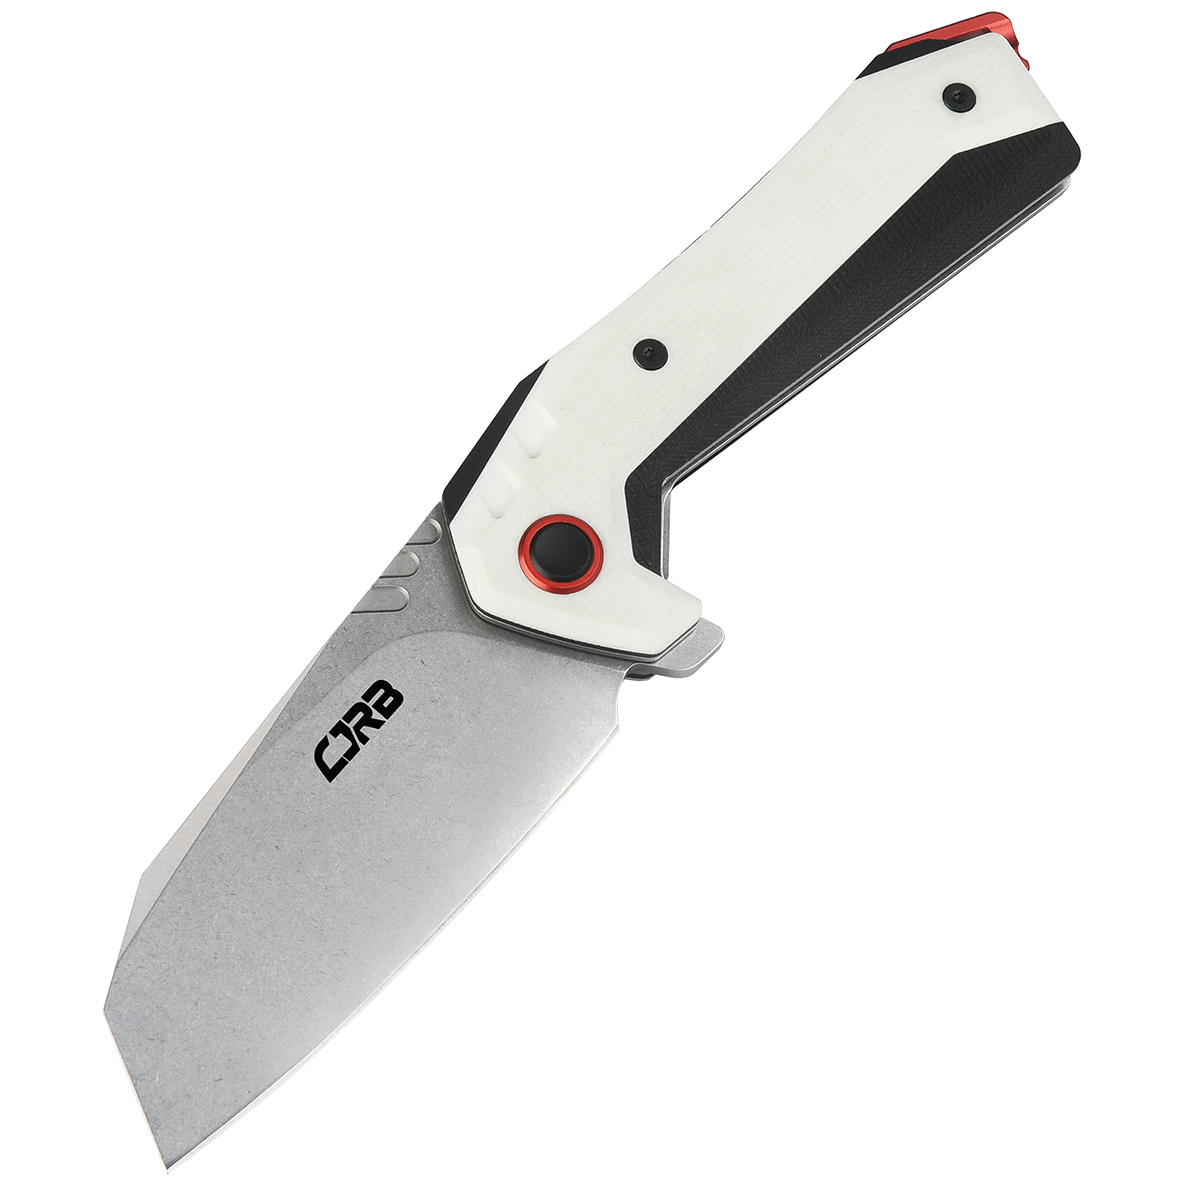 Складной нож CJRB Tigris, сталь AR-RPM9, White G10, Бренды, CJRB Cutlery